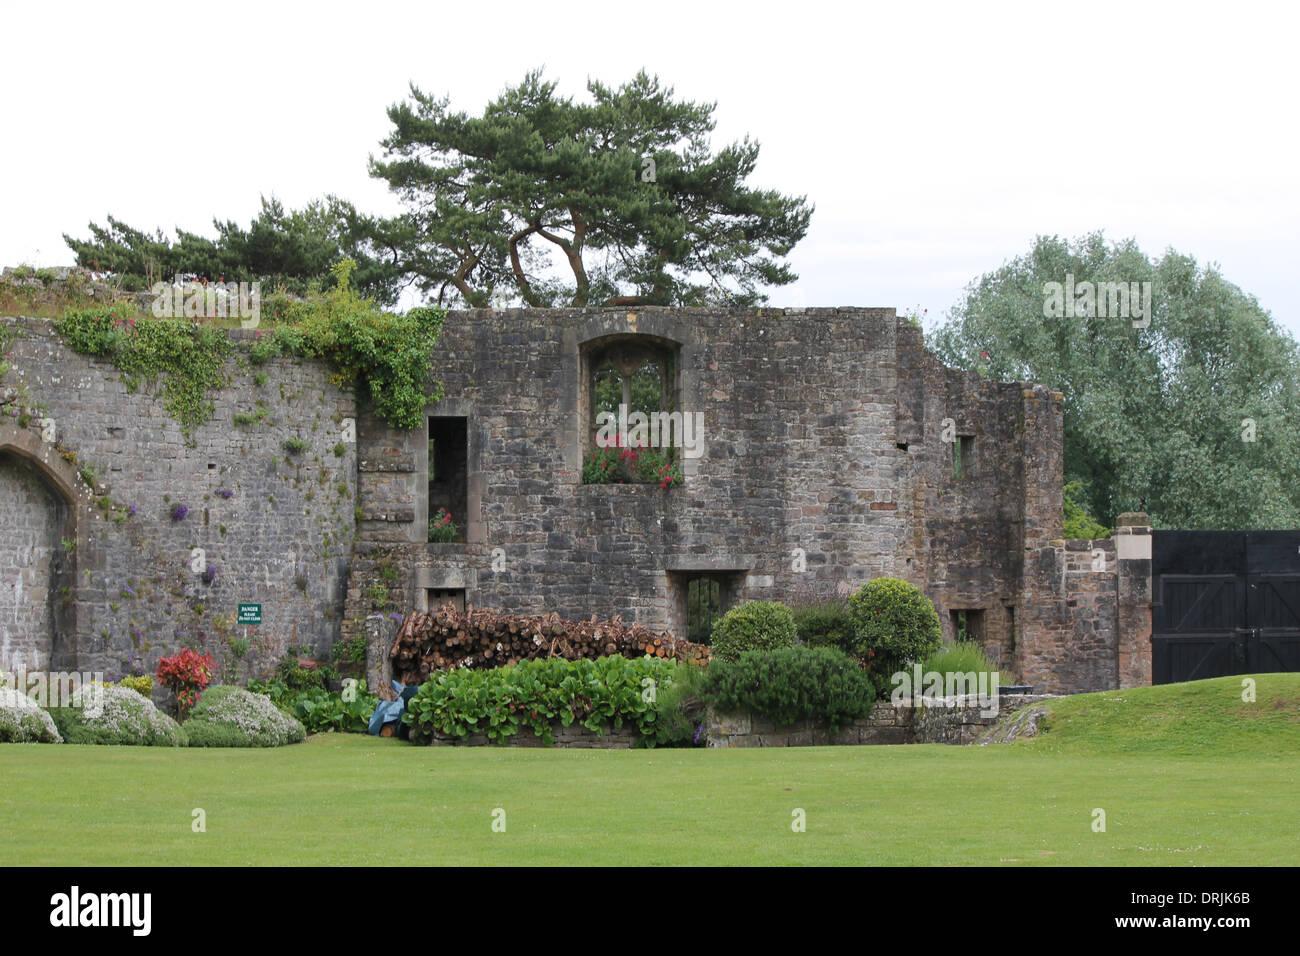 Burgmauer, Rundbogenfenster, Blumen im Fenster, Waldumgebung, Rasen Garten, gepflegter Rasen Stockfoto